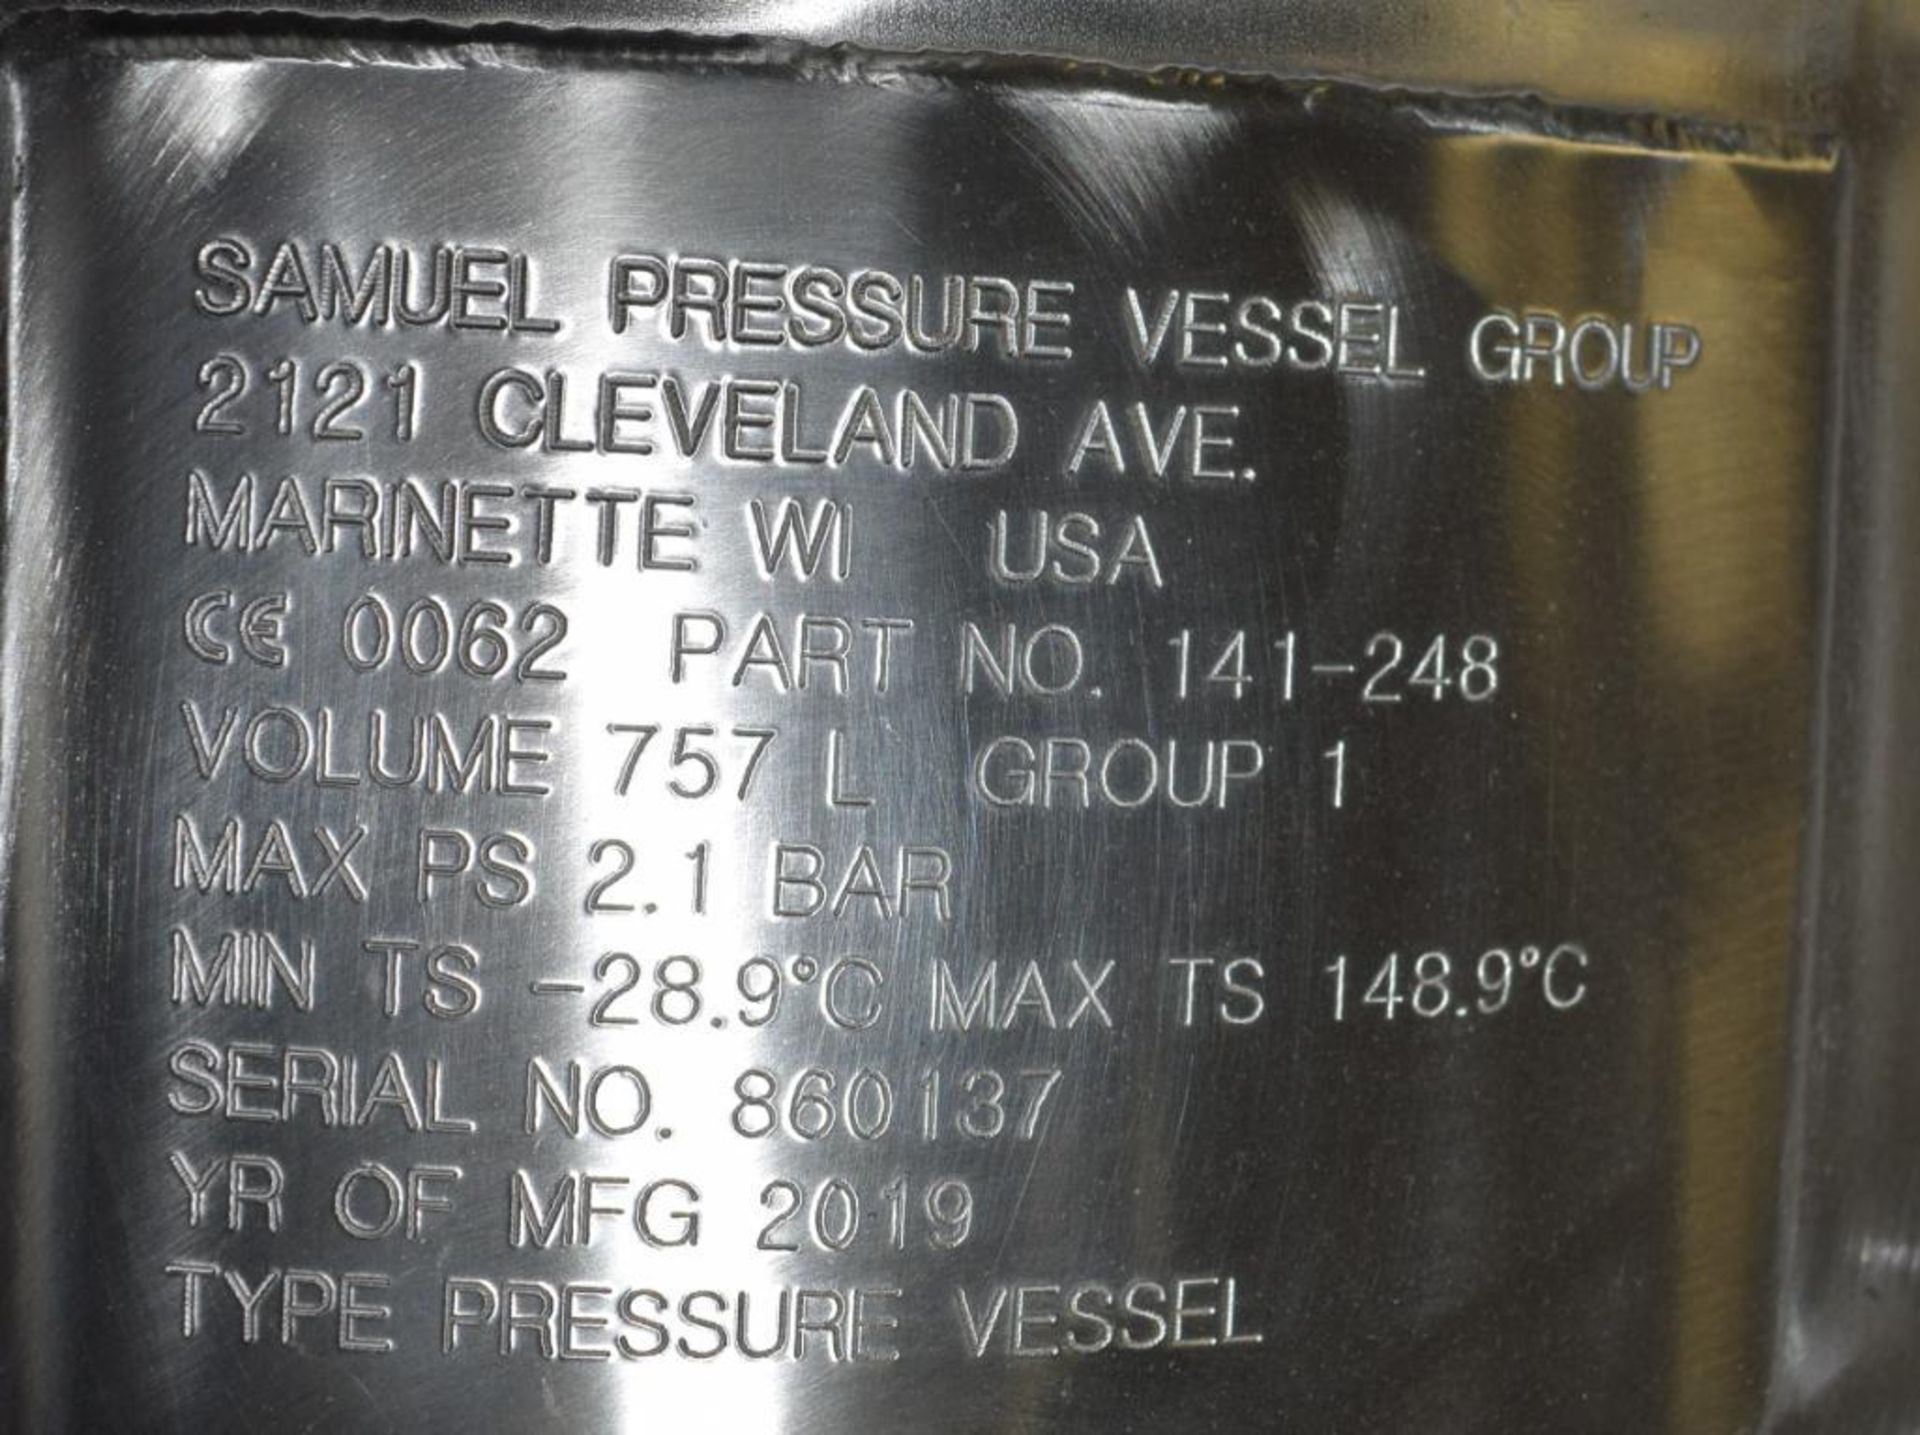 UNUSED Samuel Pressure Vessel Group Bolt Together Distillation Column - Image 9 of 10